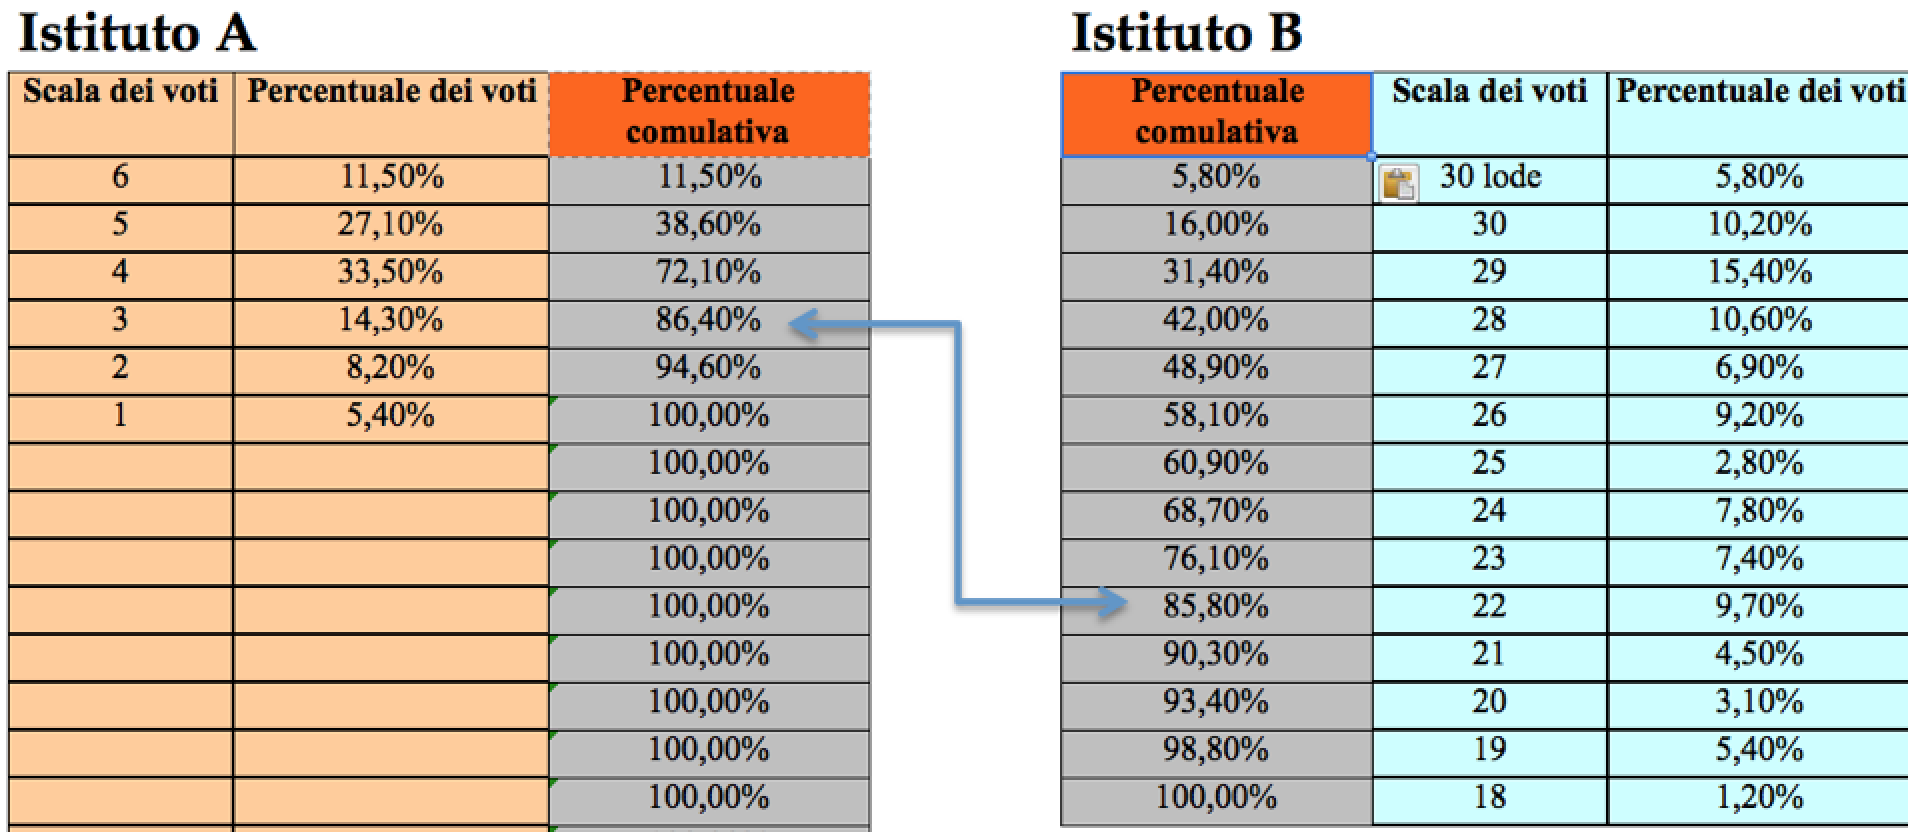 Leggiamo la percentuale cumulativa relativa al voto 3 dell Istituto A e individuiamo nella colonna corrispondente della tabella dell Istituto B il